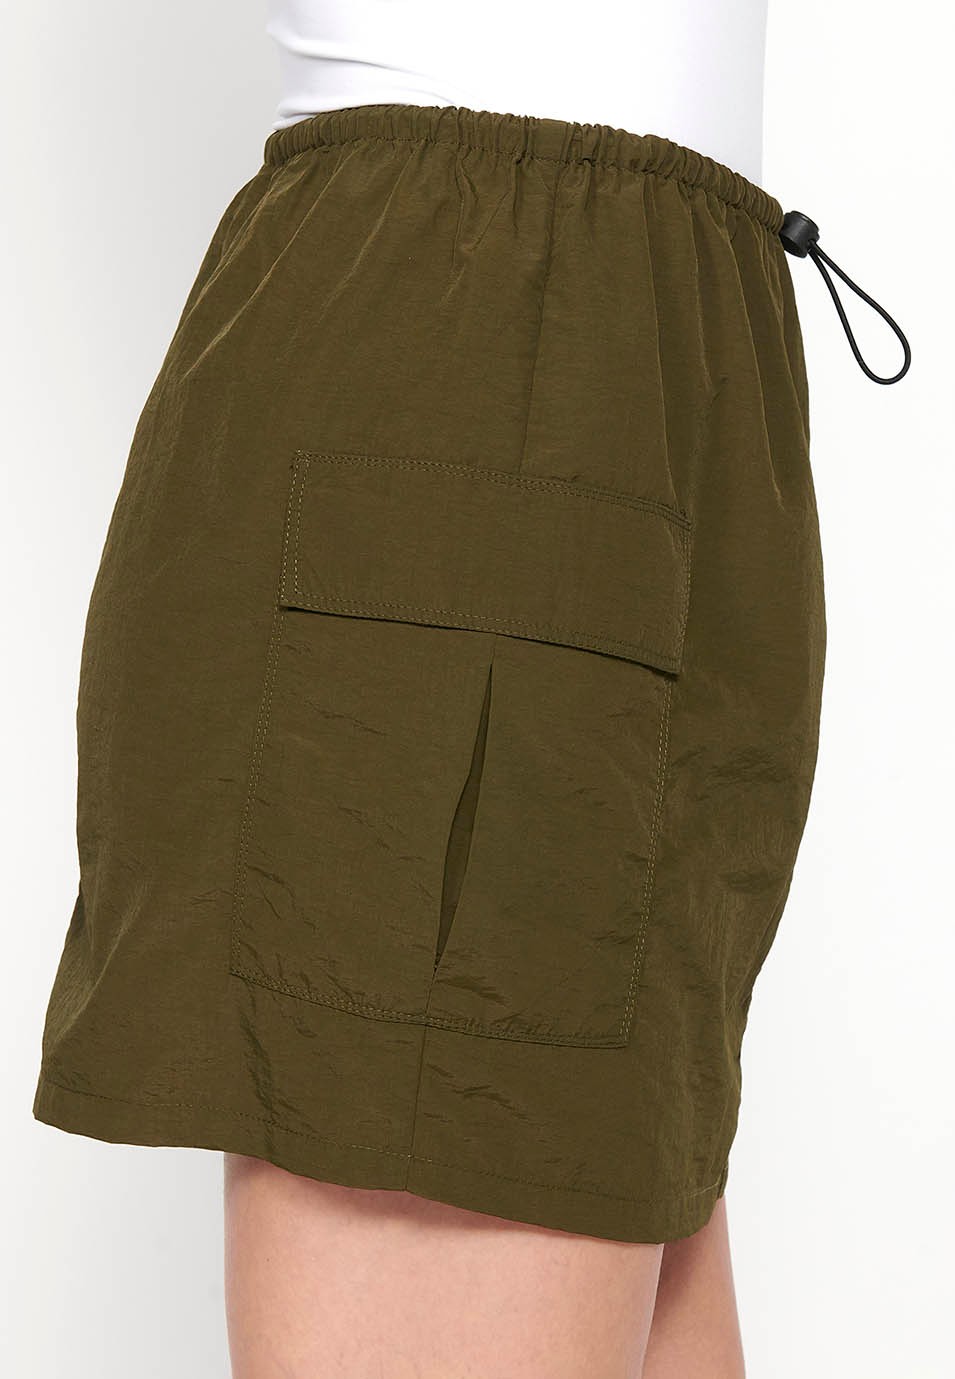 Jupe courte avec taille et poches réglables, couleur kaki pour femme